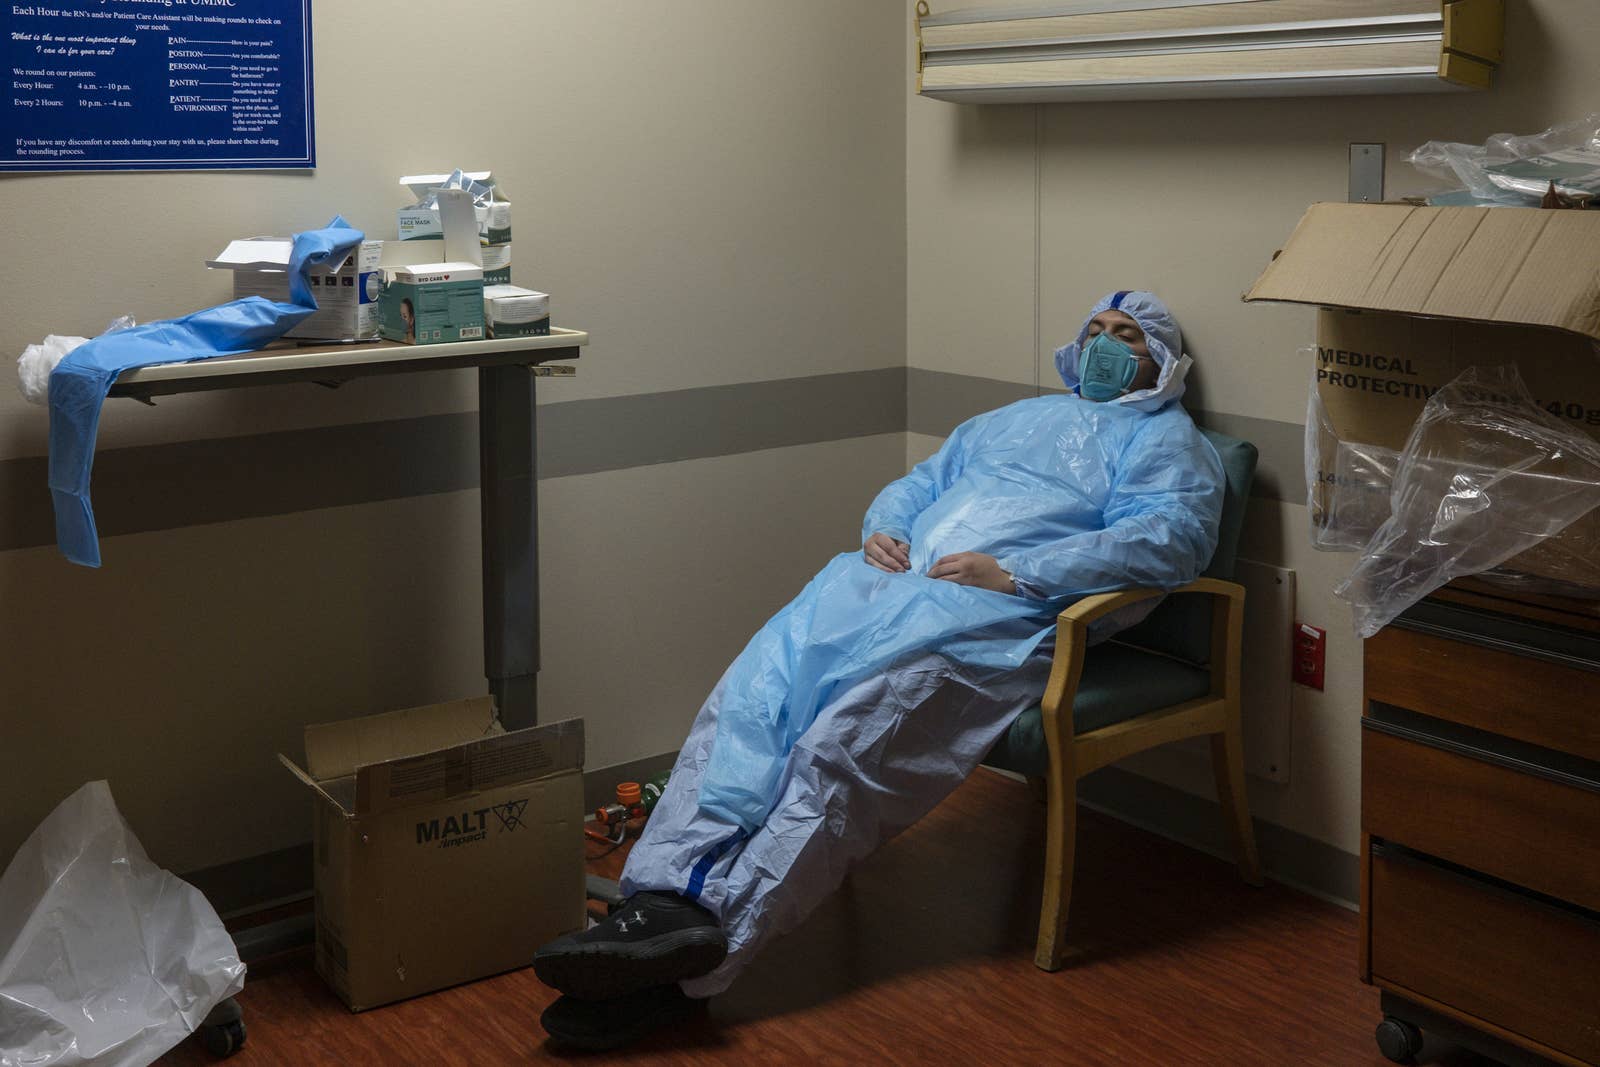 До слёз: фотограф из Техаса показал снимки, сделанные в госпитале, где лежат с COVID-19 - фото 15